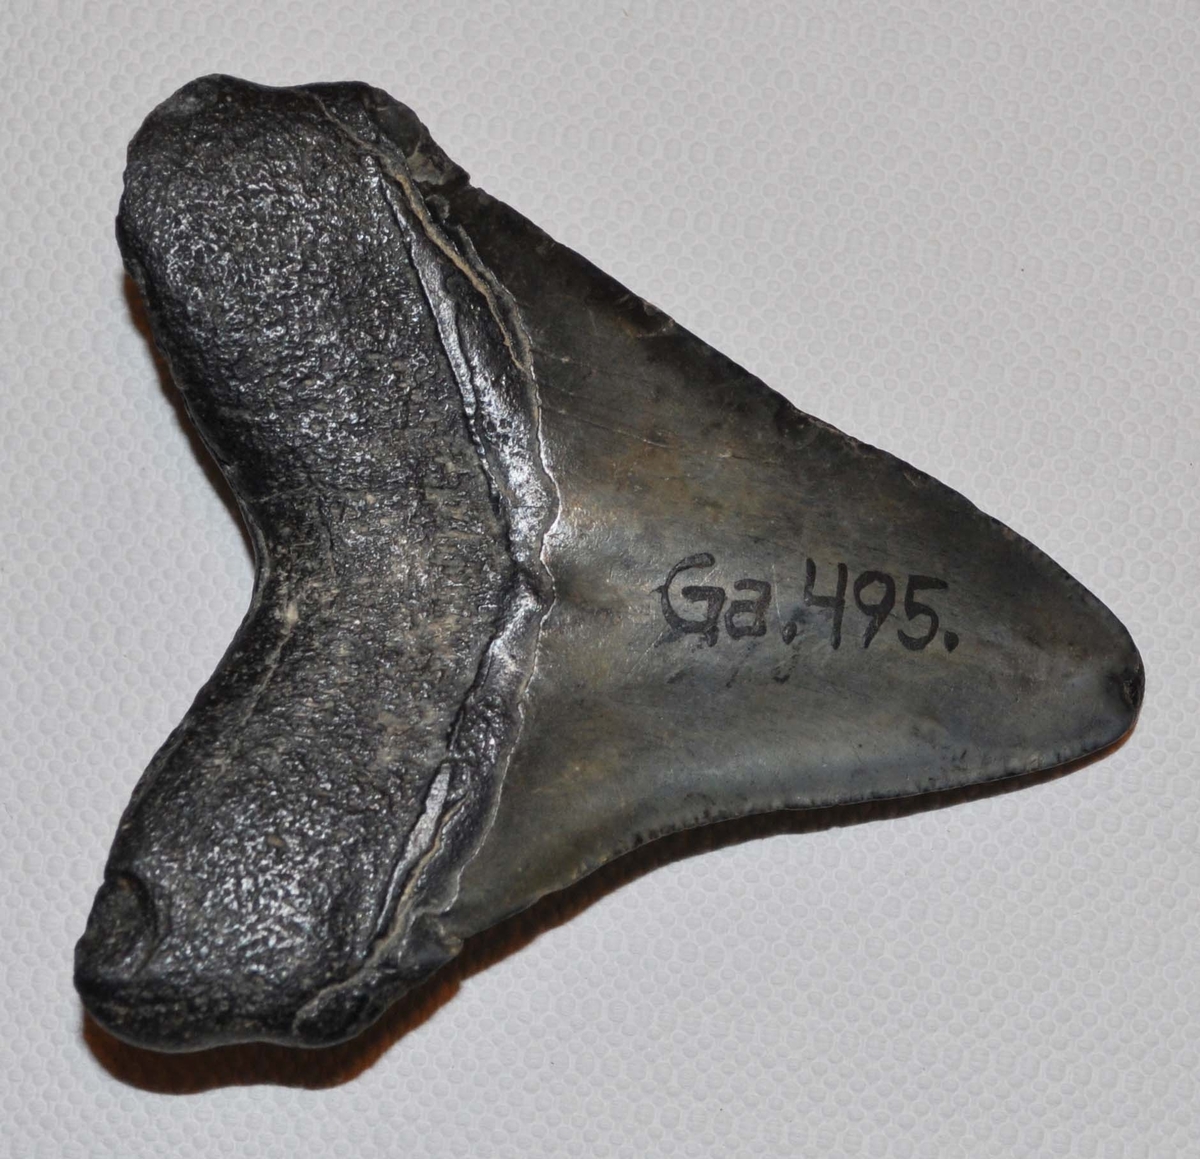 Fossil hajtand av arten Charcharocles megalodon, en stor vithaj som levde under tertiärtid och dog ut för en eller hågra miljoner år sedan. Tanden är troligtvis importerad, sannolikt från USA.